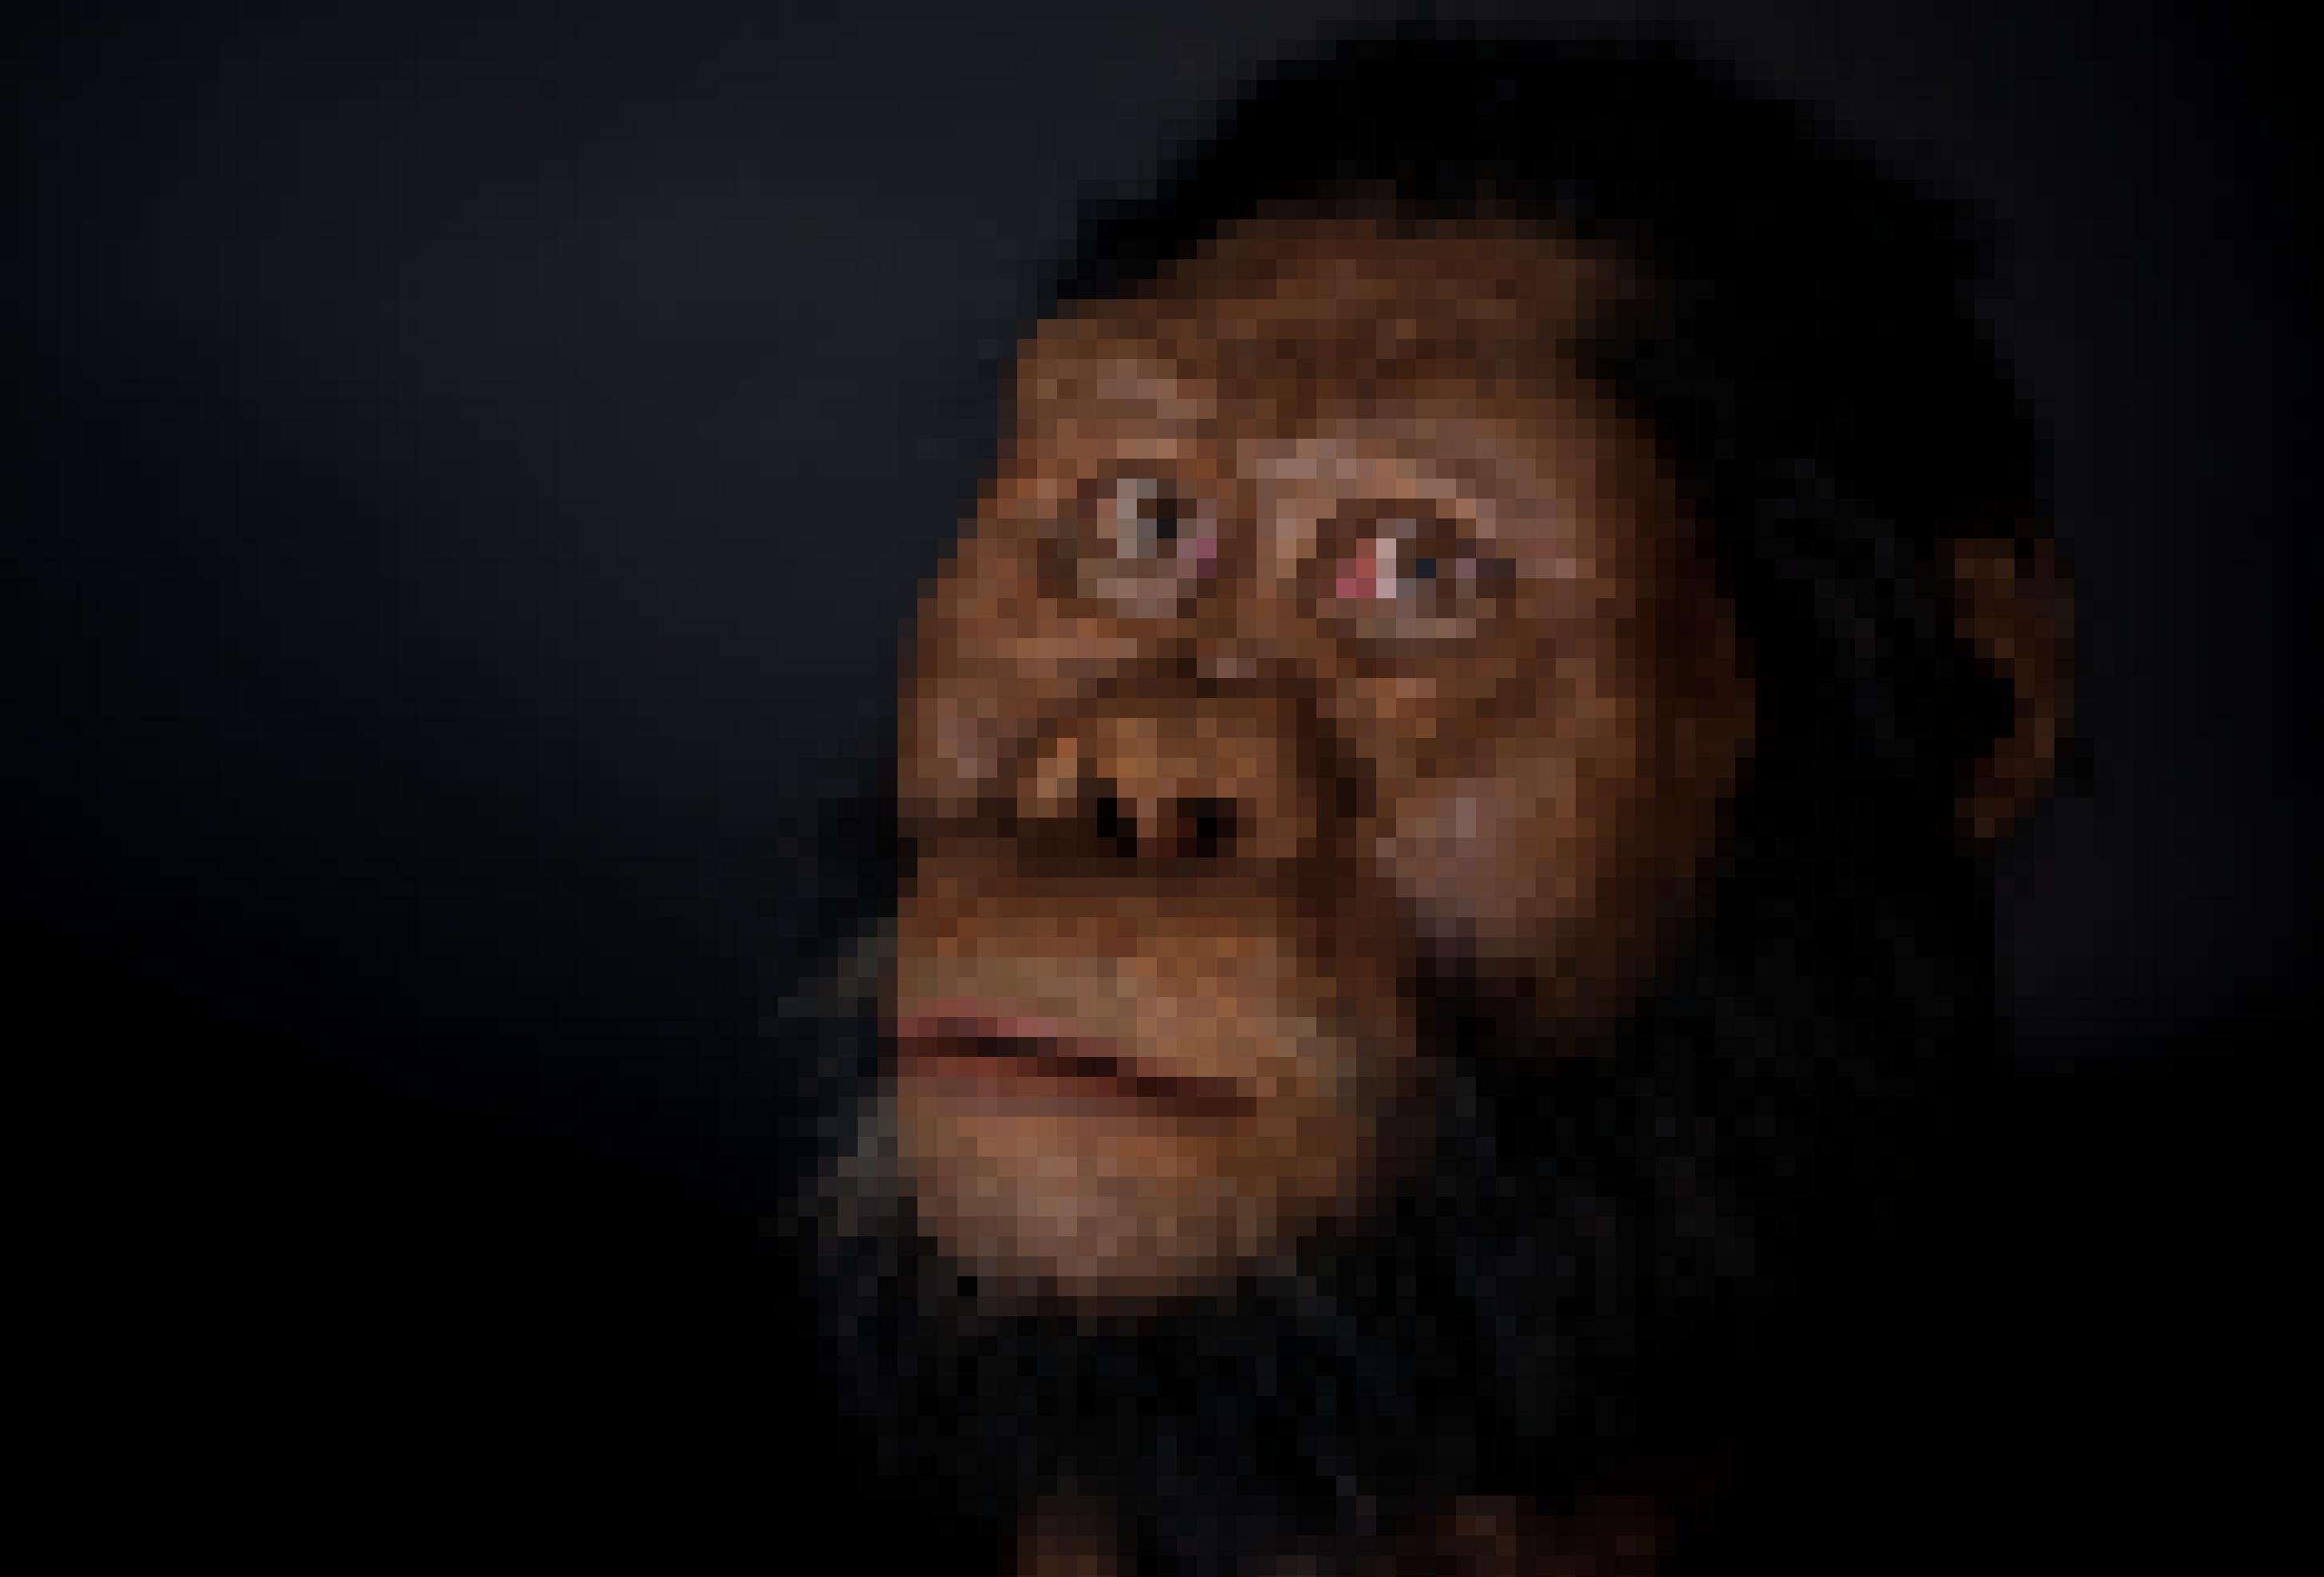 Die Rekonstruktion von Australopithecus anamensis zeigt ein behaartes, äffisches Wesen mit einem bewussten, menschlich wirkenden Blick.  Erstmals ließ sich das Gesicht dieses Vormenschen modellieren – anhand eines kürzlich entdeckten Schädelfossils.